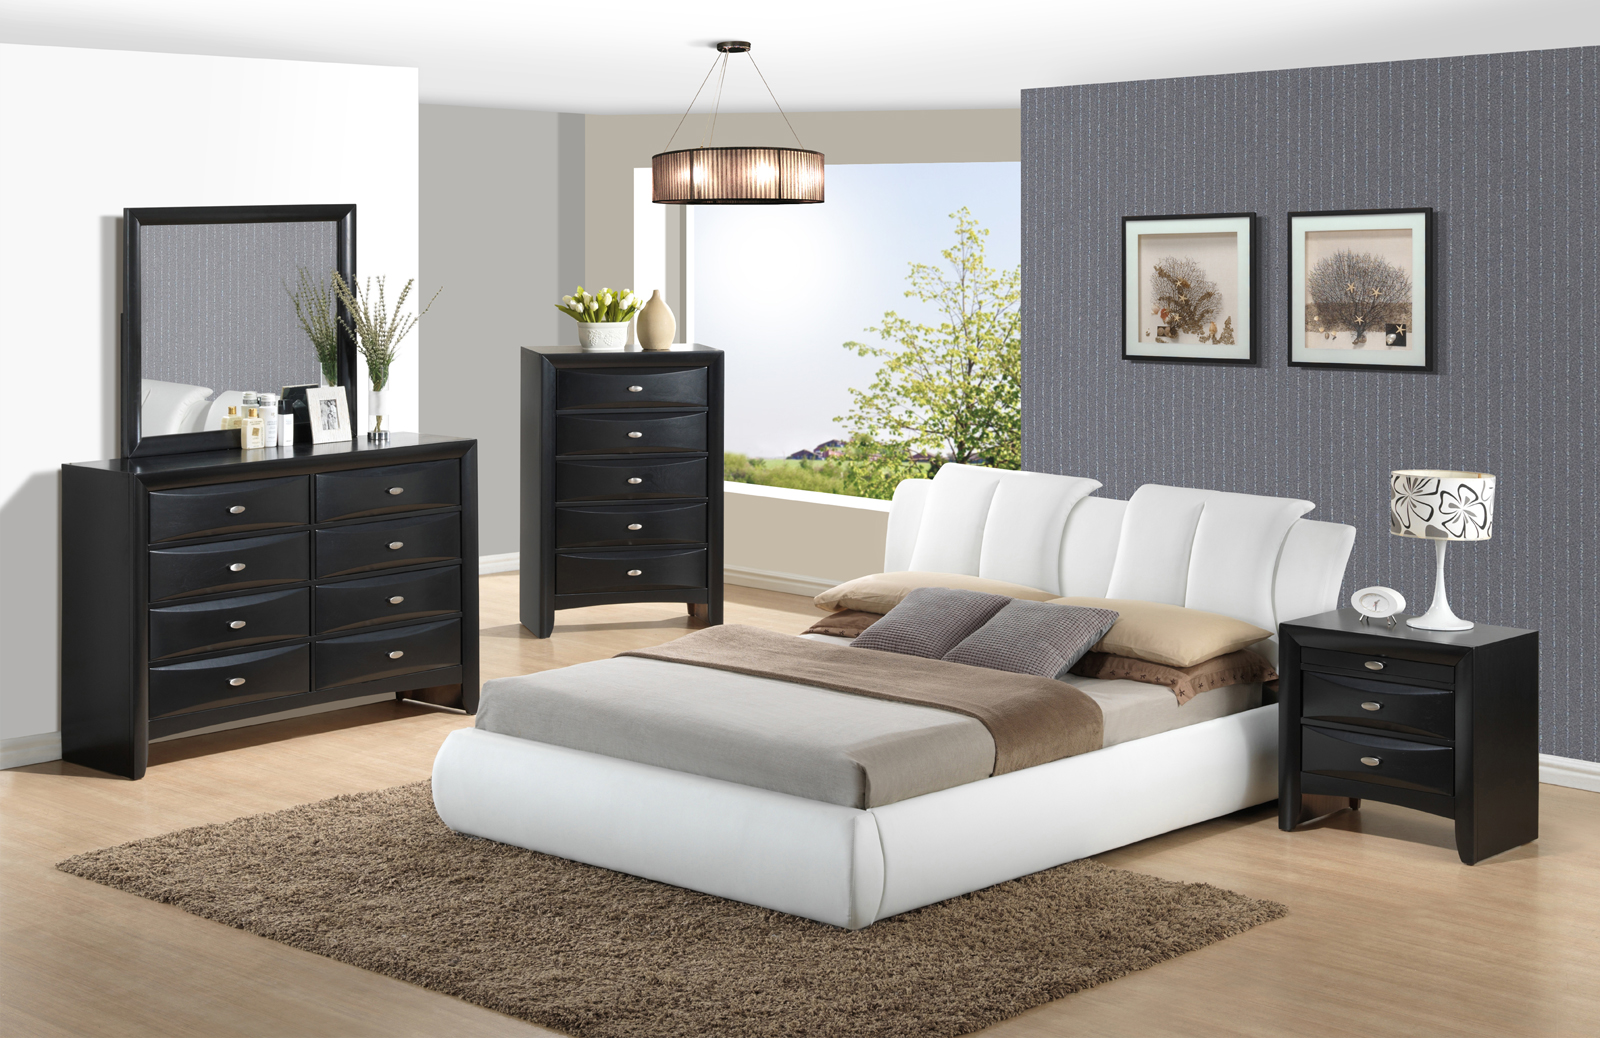 global bedroom furniture set